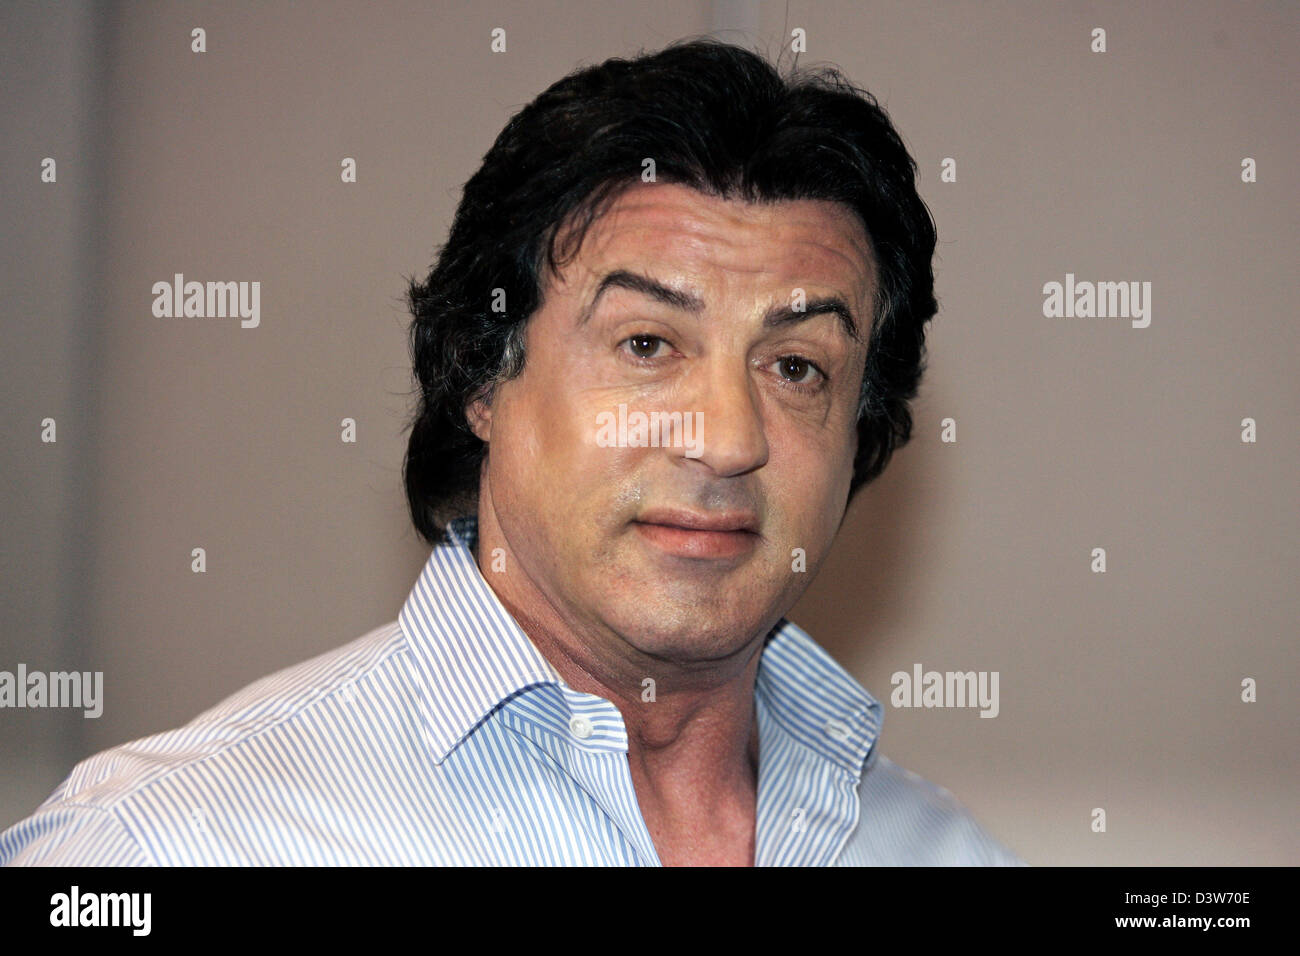 L'acteur américain Sylvester Stallone est représenté au cours de la présentation de son nouveau film "Rocky Balboa" à Cologne, Allemagne, le jeudi 11 janvier 2007. L'Allemagne début du film est prévue pour le 08 février 2007. Photo : Joerg Carstensen Banque D'Images